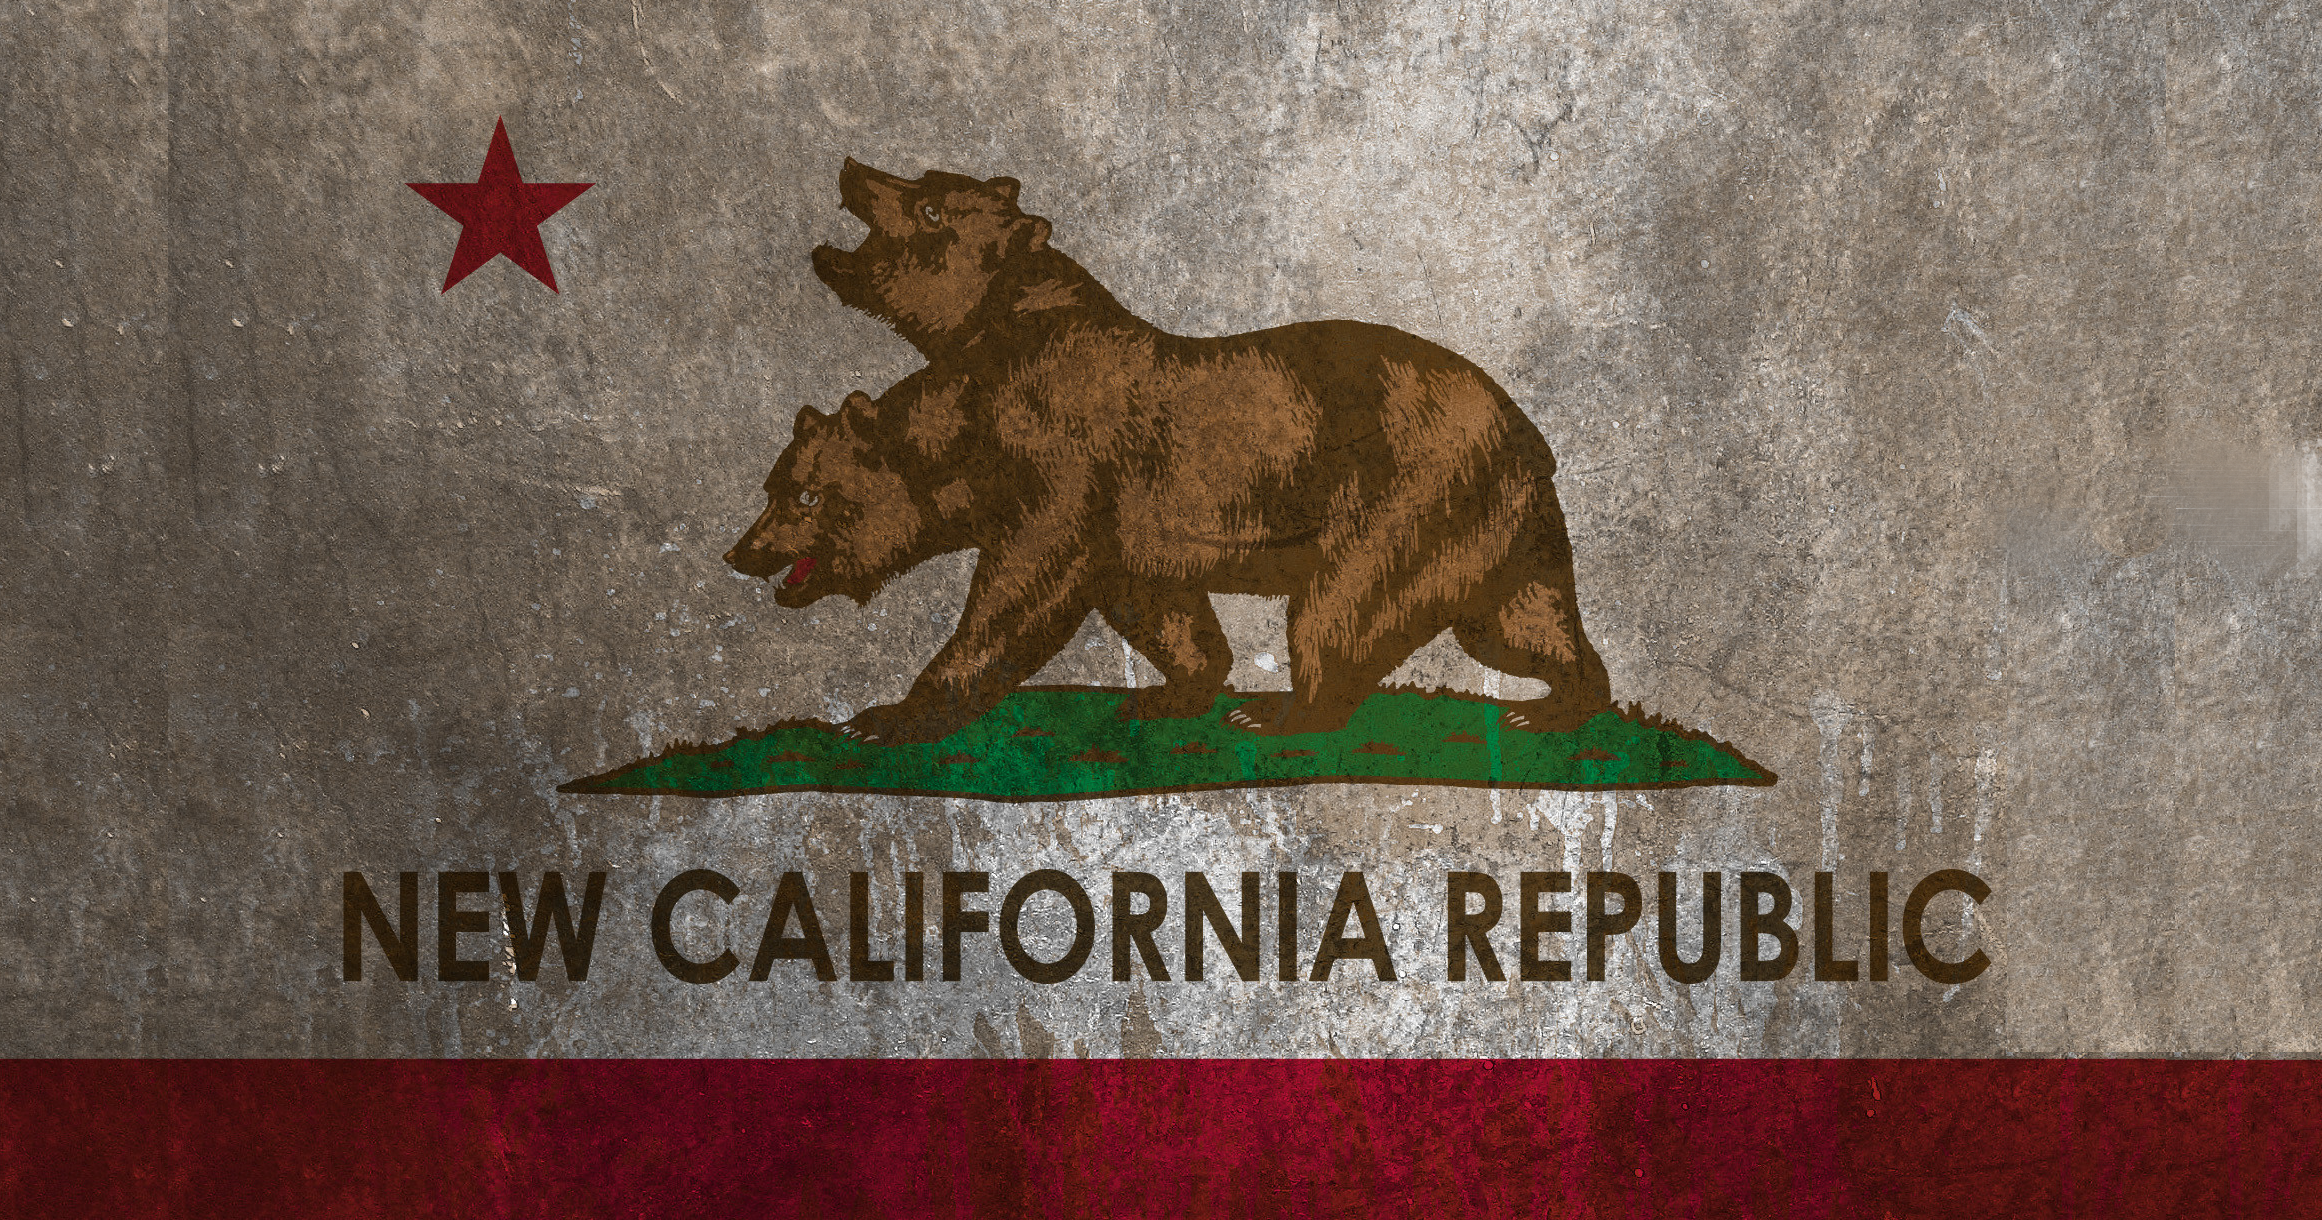 The New California Republic